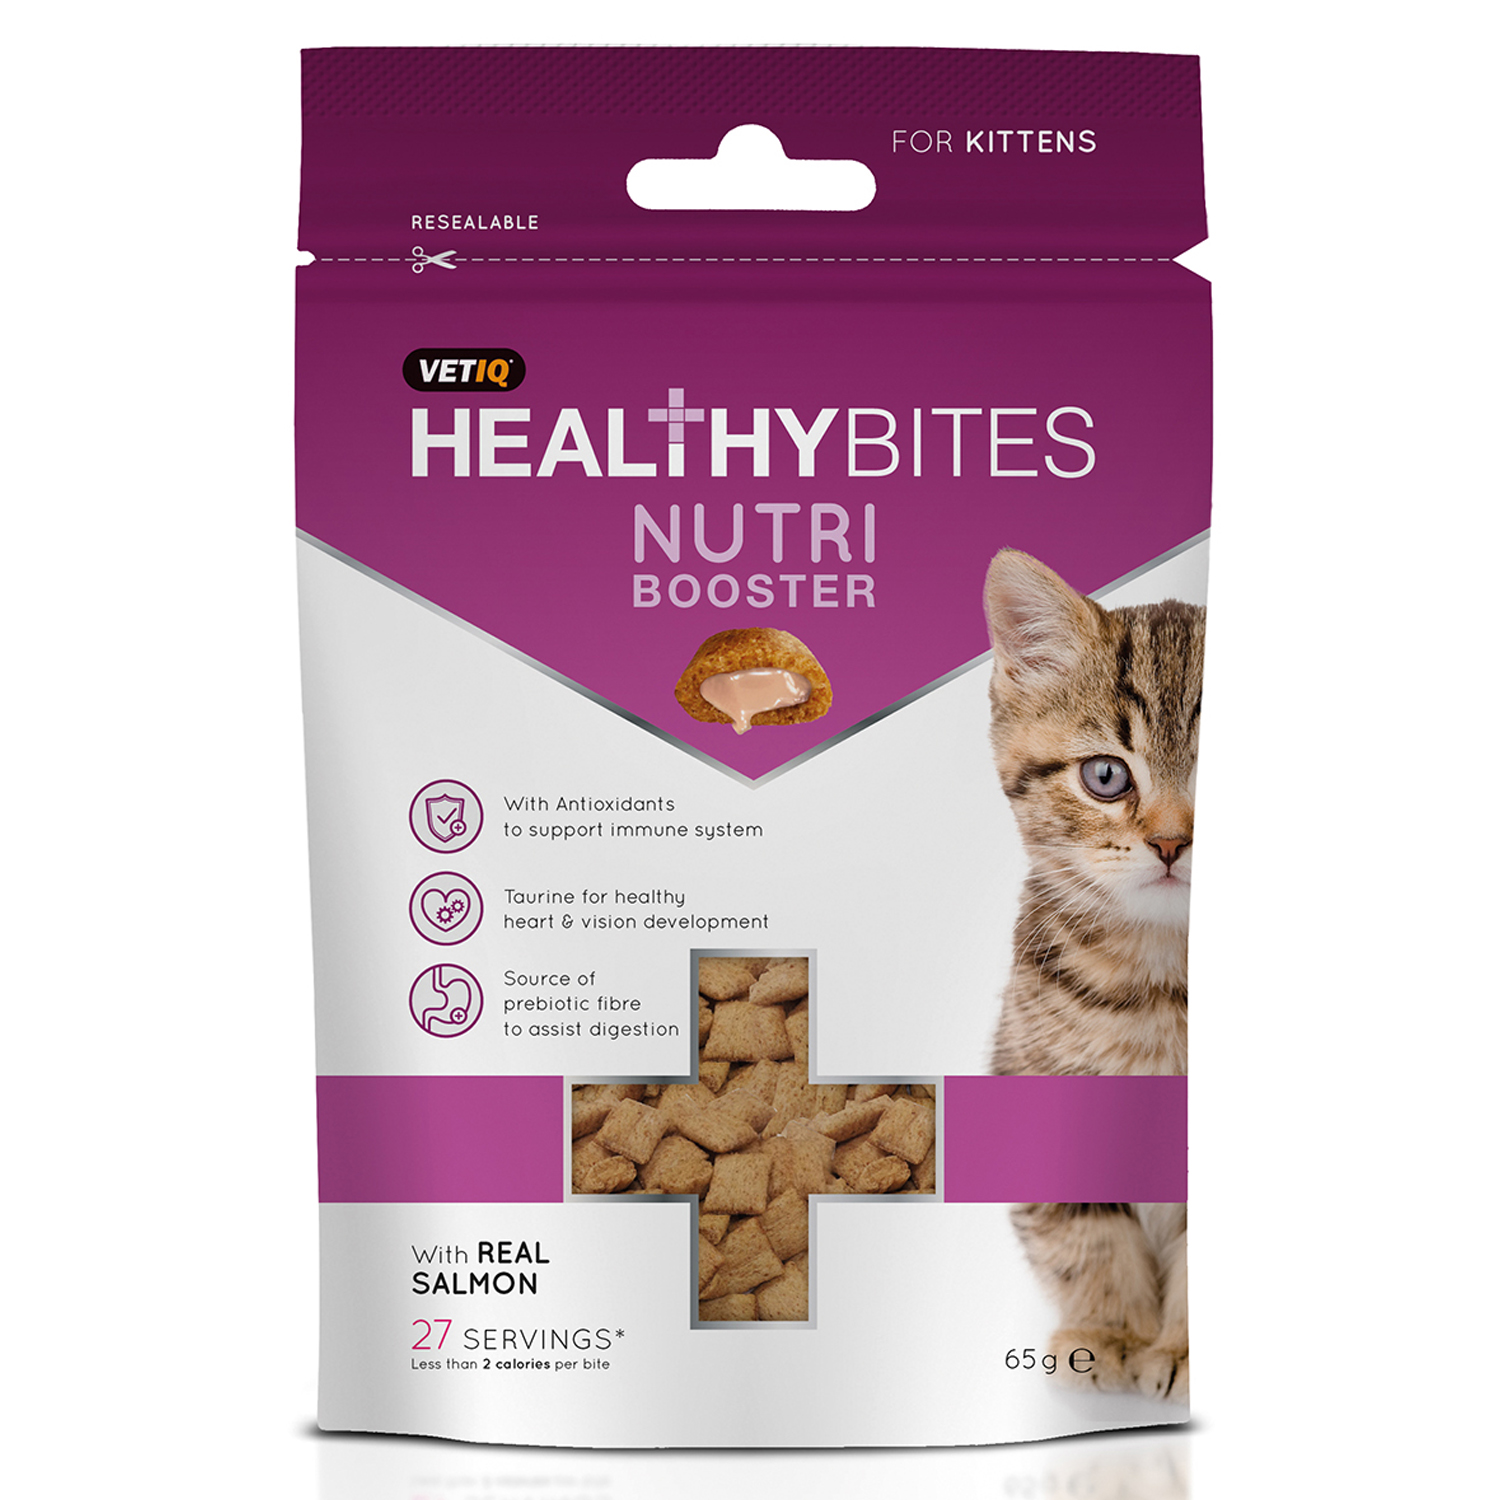 VETIQ HEALTHY BITES NUTRI BOOSTER FOR KITTENS 65 GM 65 GM